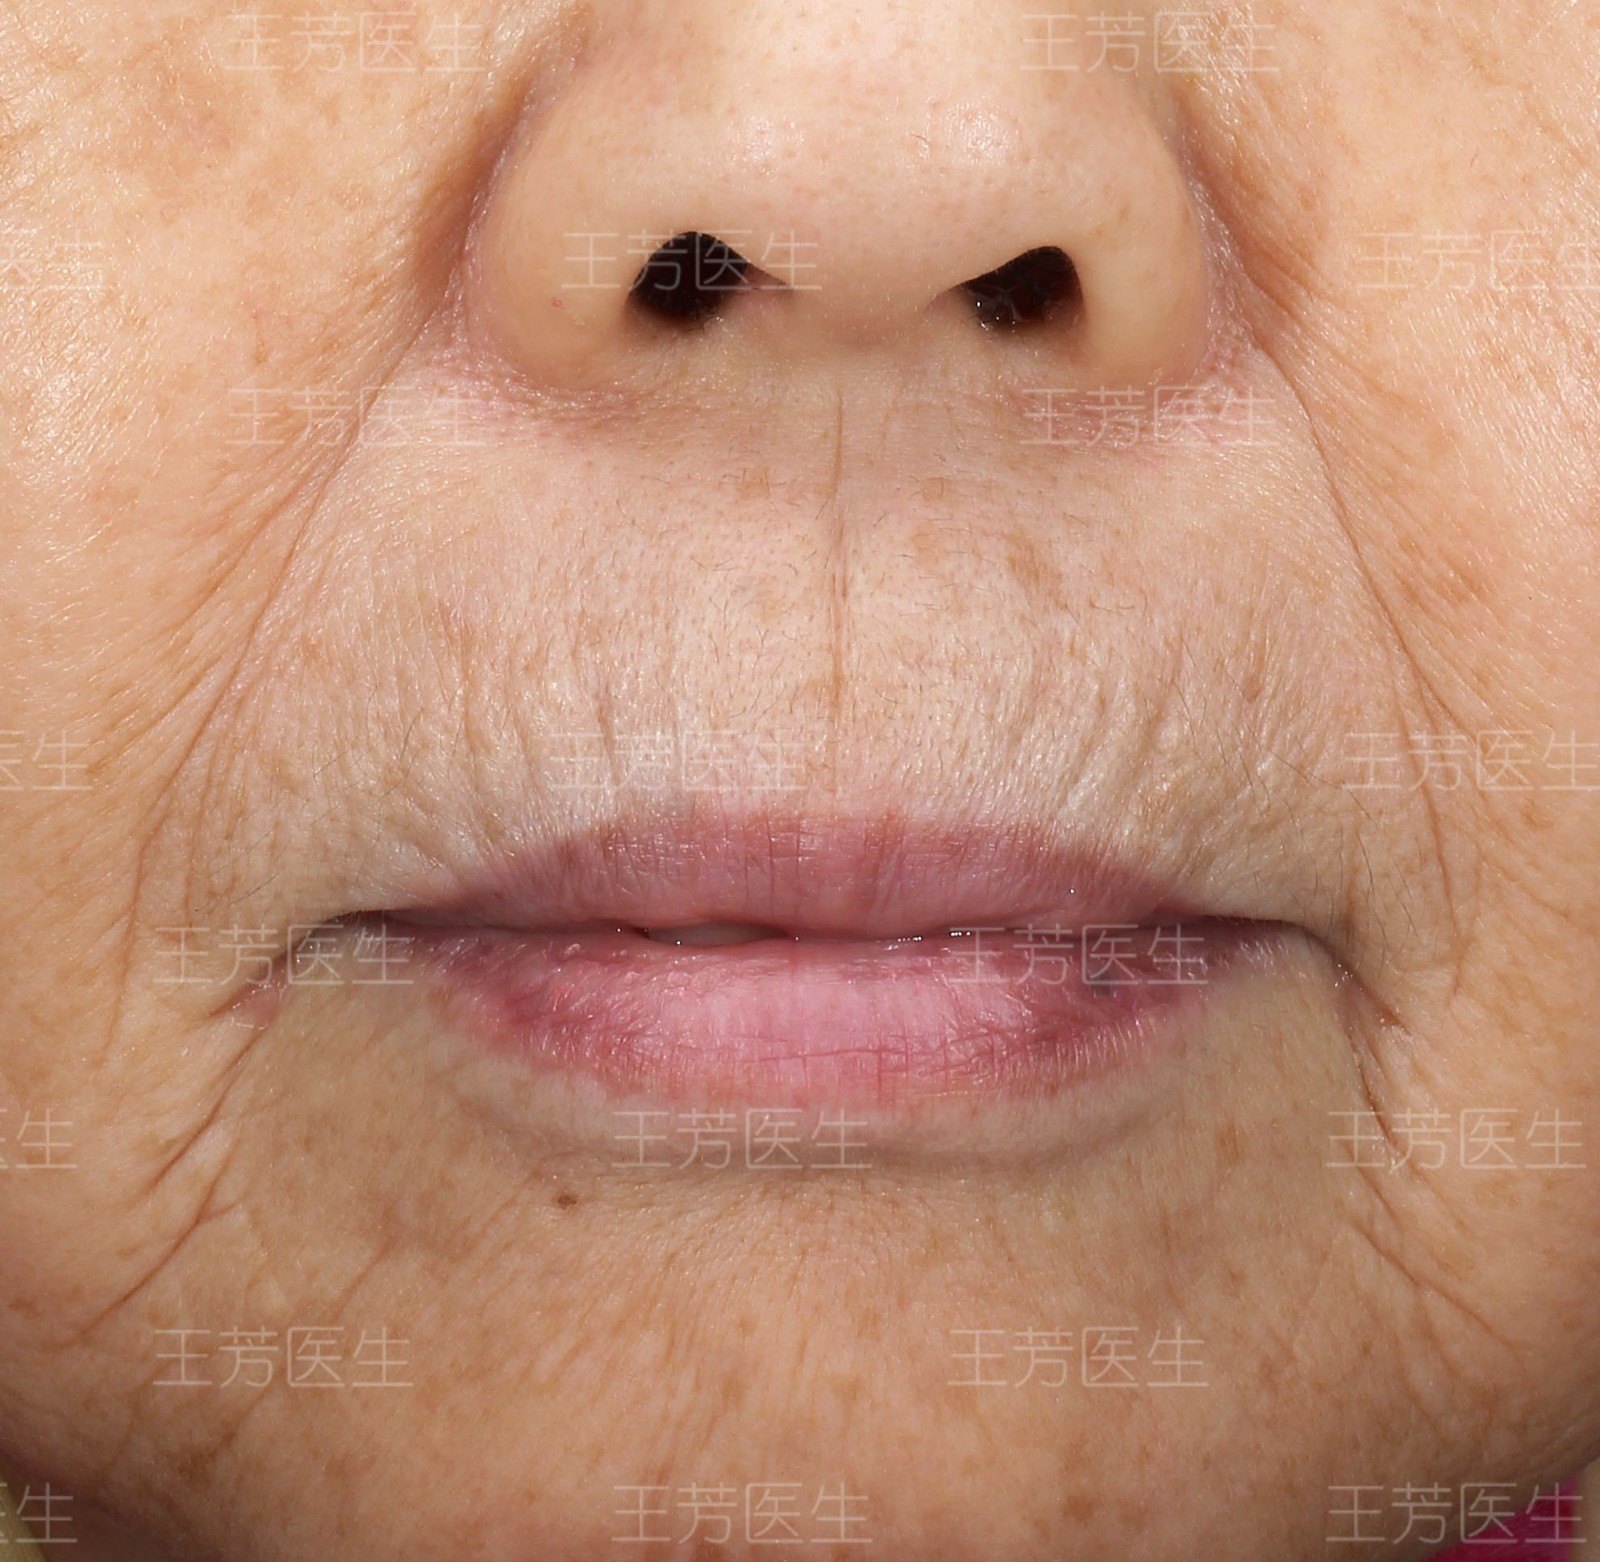 吹火纹或称"吸烟纹,是嘴唇周围的纵形皱纹,也是口周皮肤老化,弹性